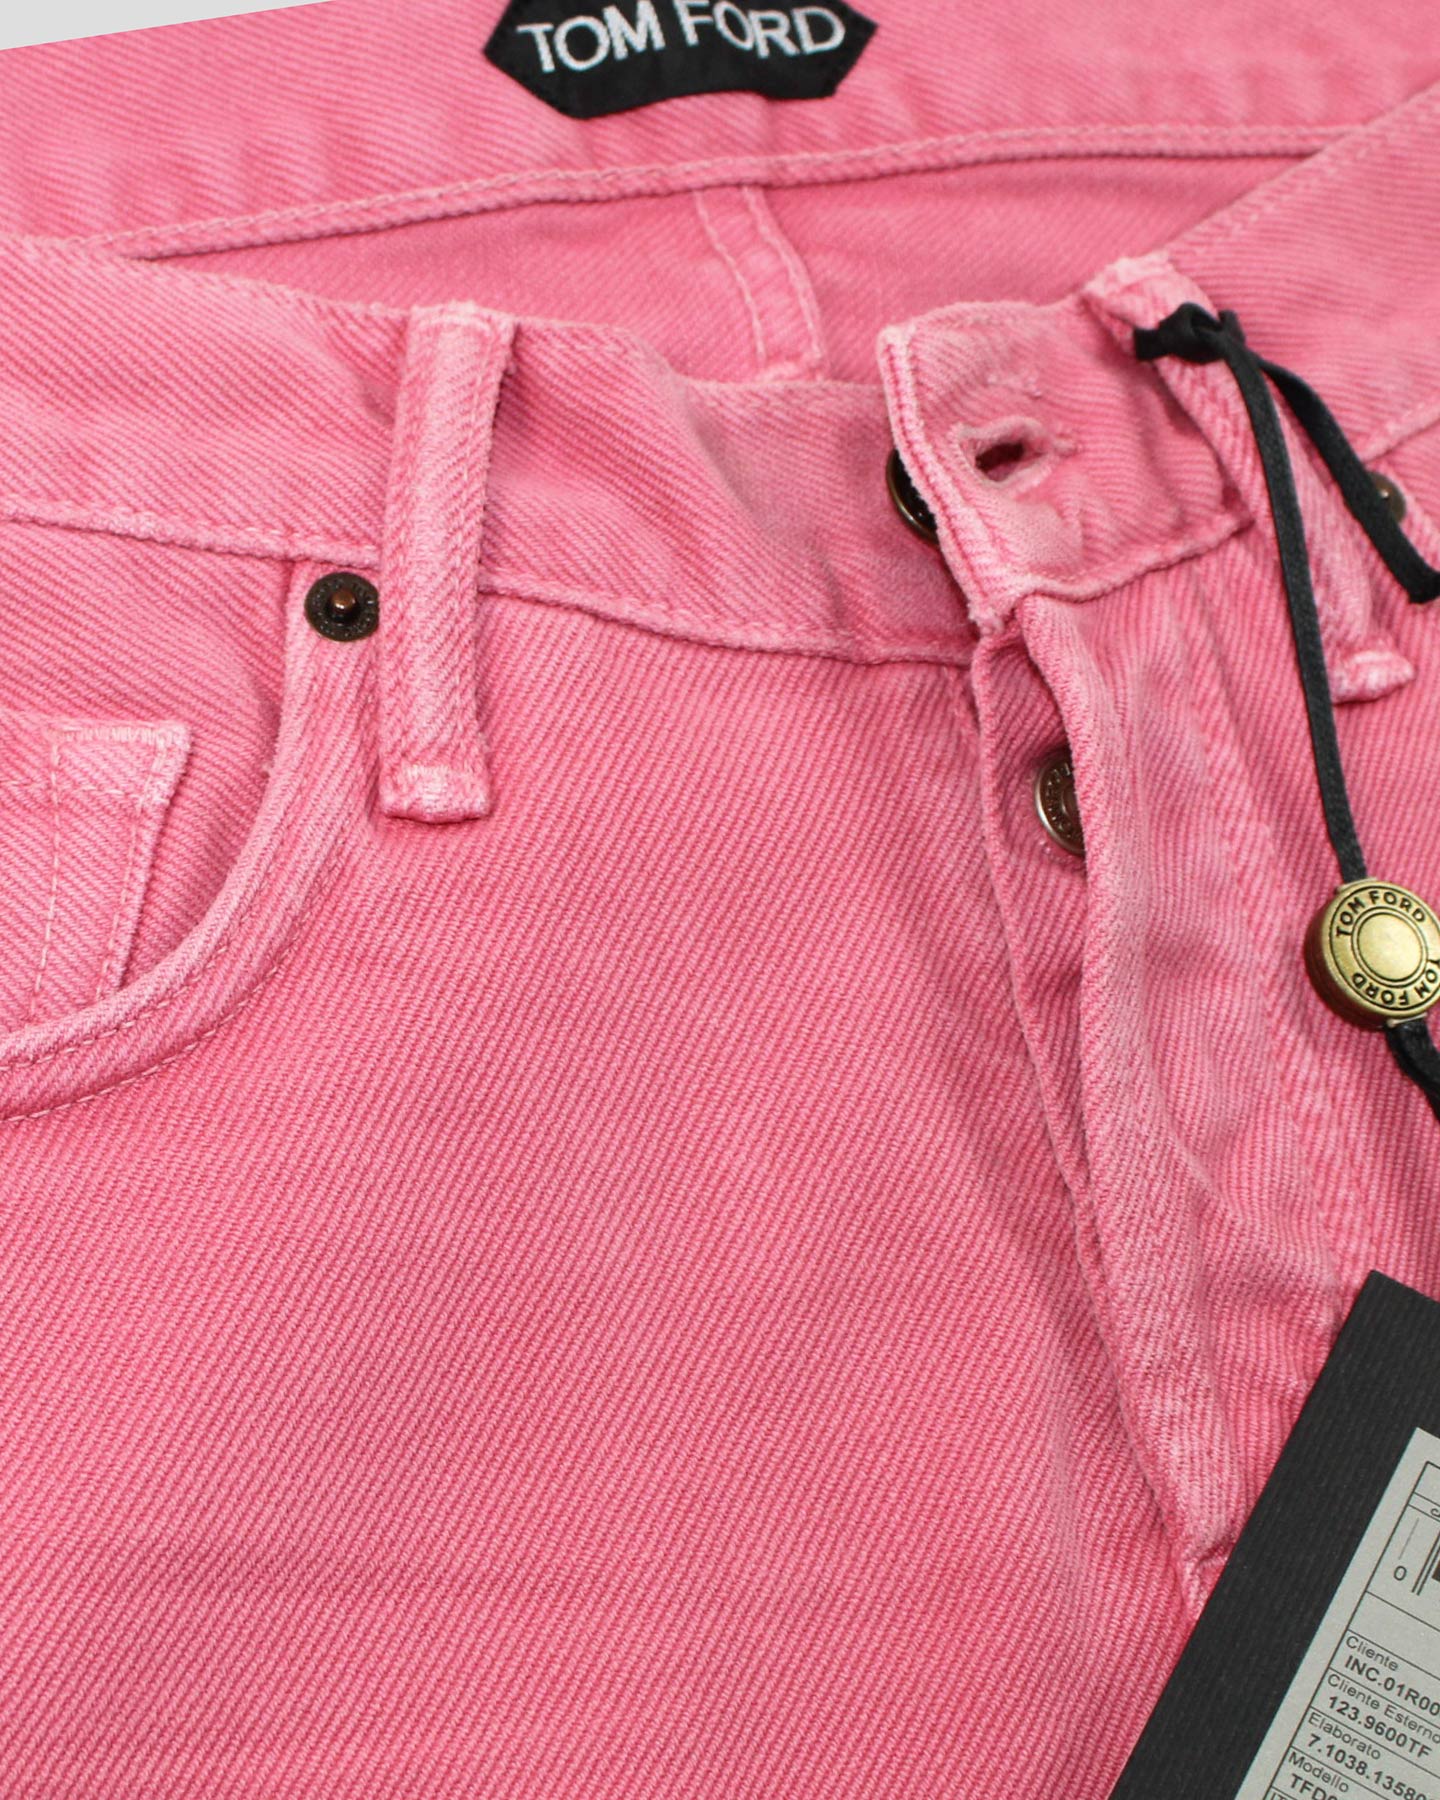 Tom Ford Pants Pink 31 Slim Fit - Tie Deals